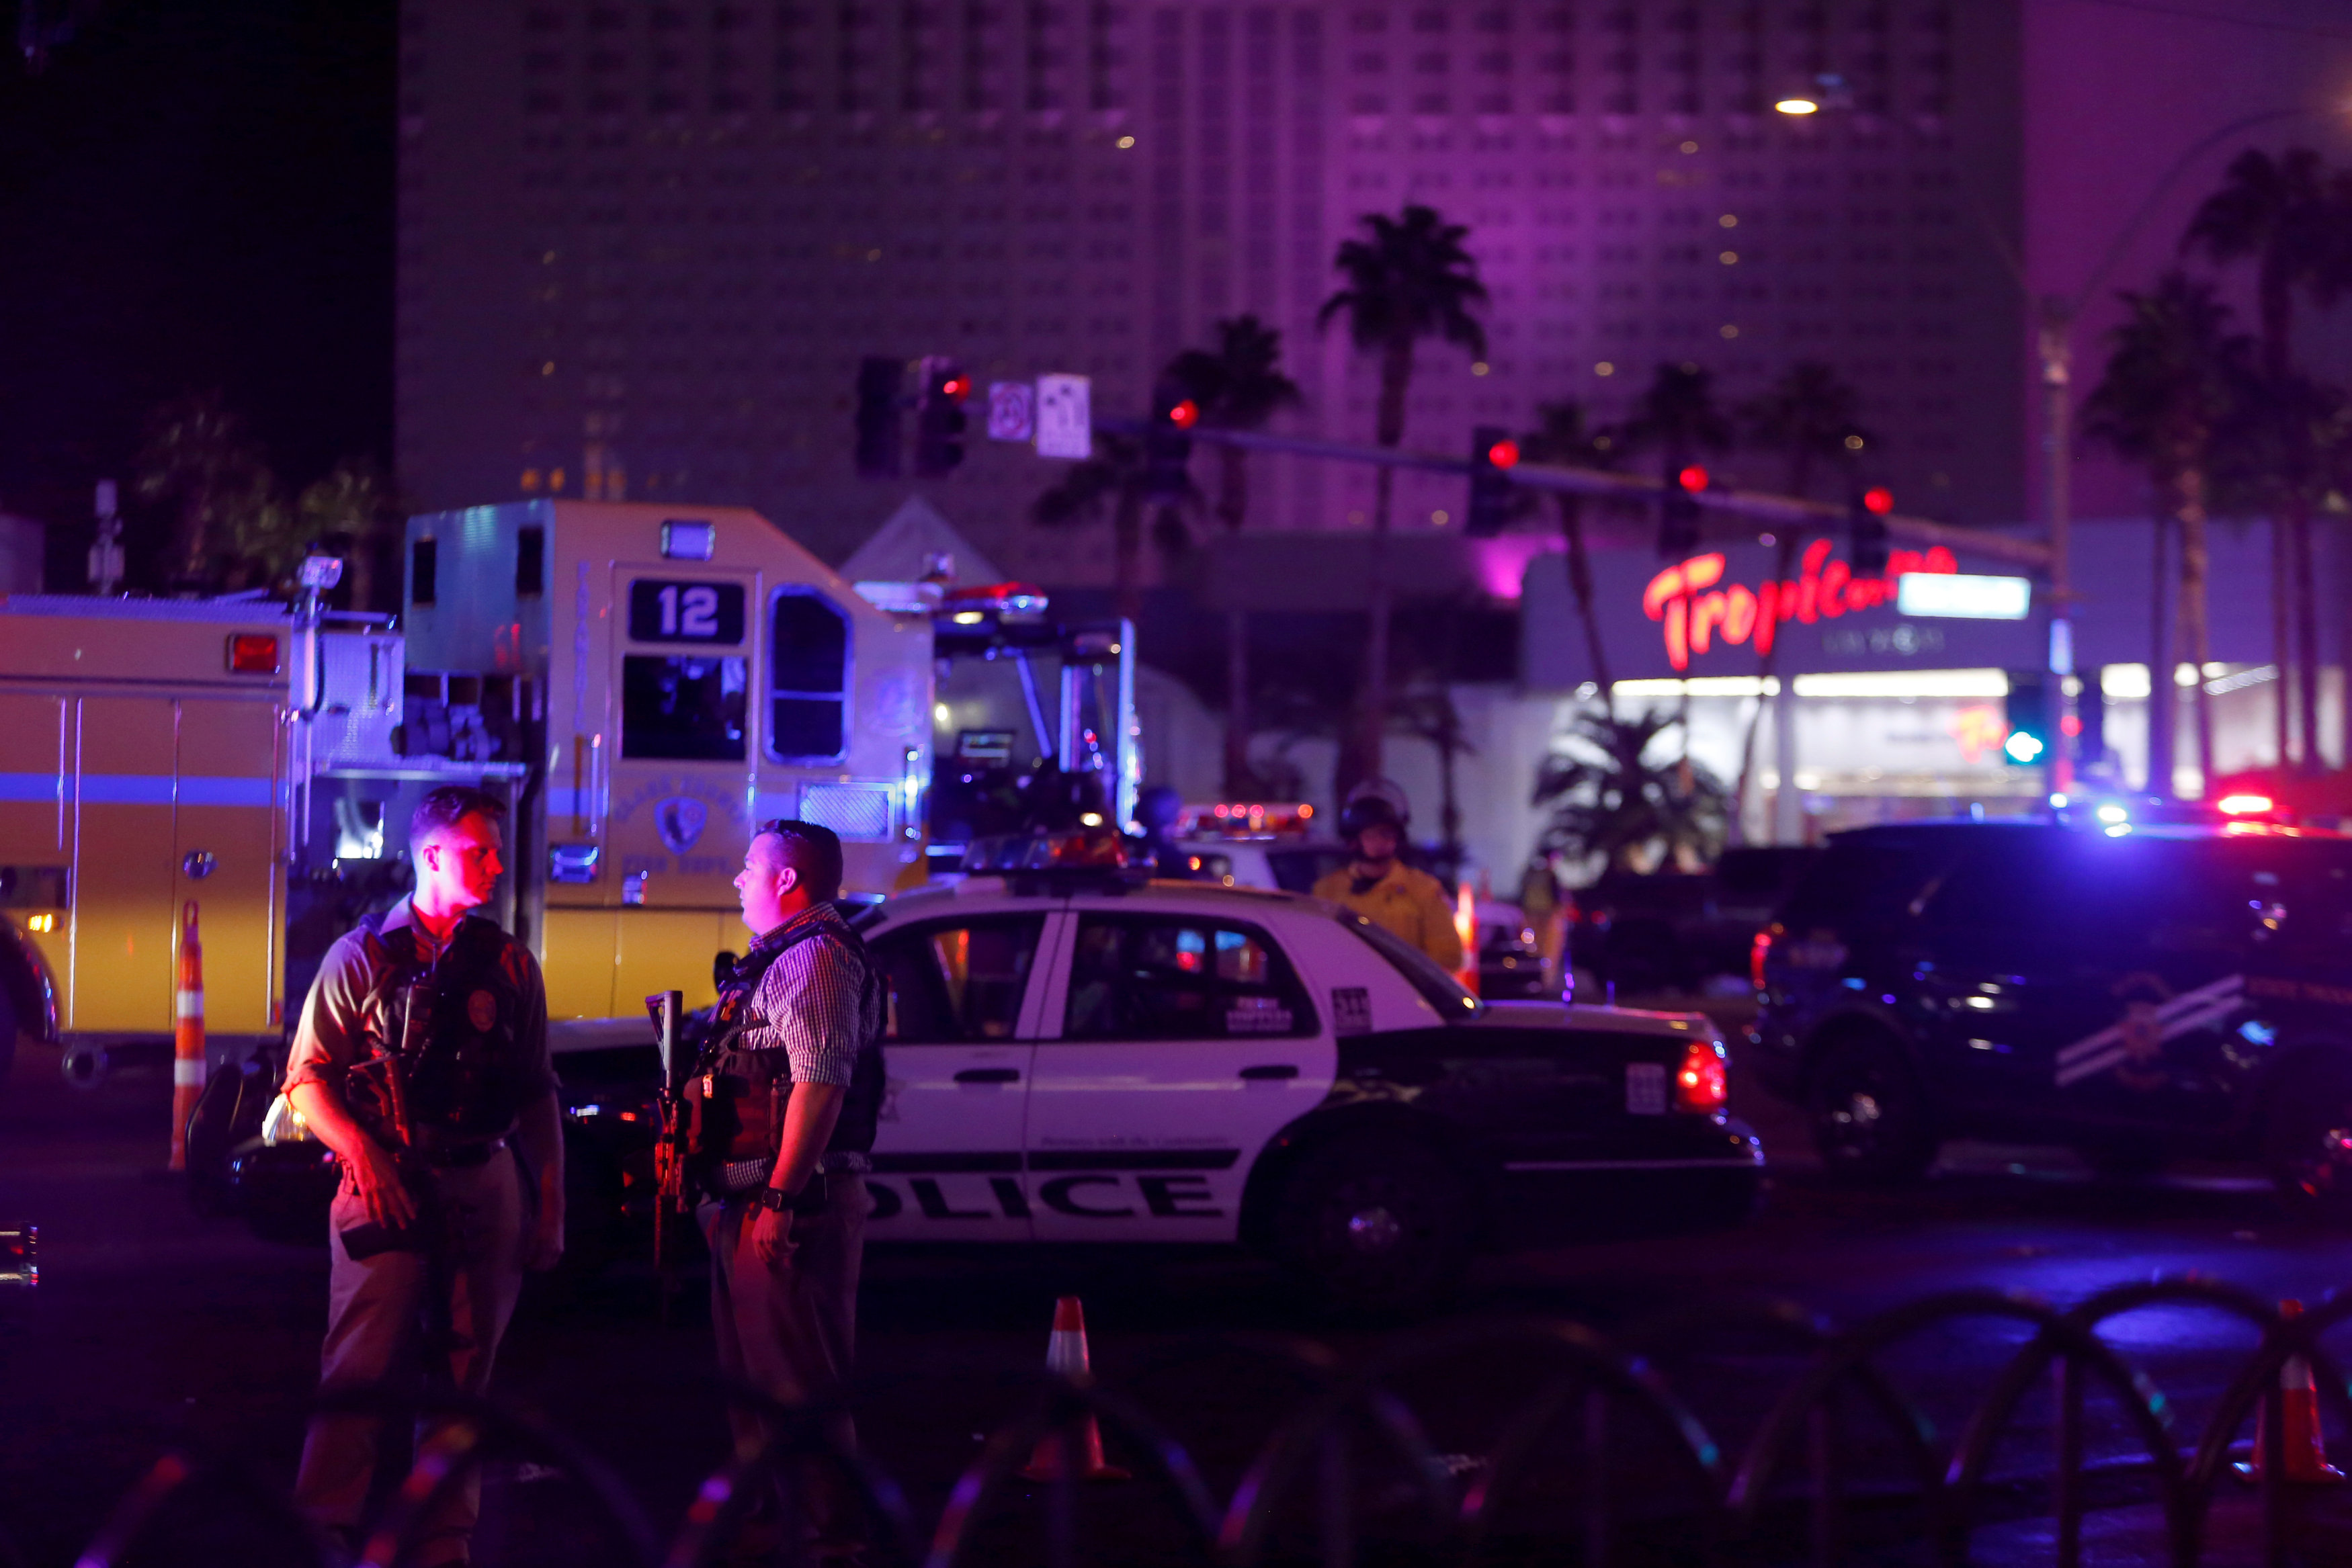 In pictures: Shooting rampage in Las Vegas, U.S.